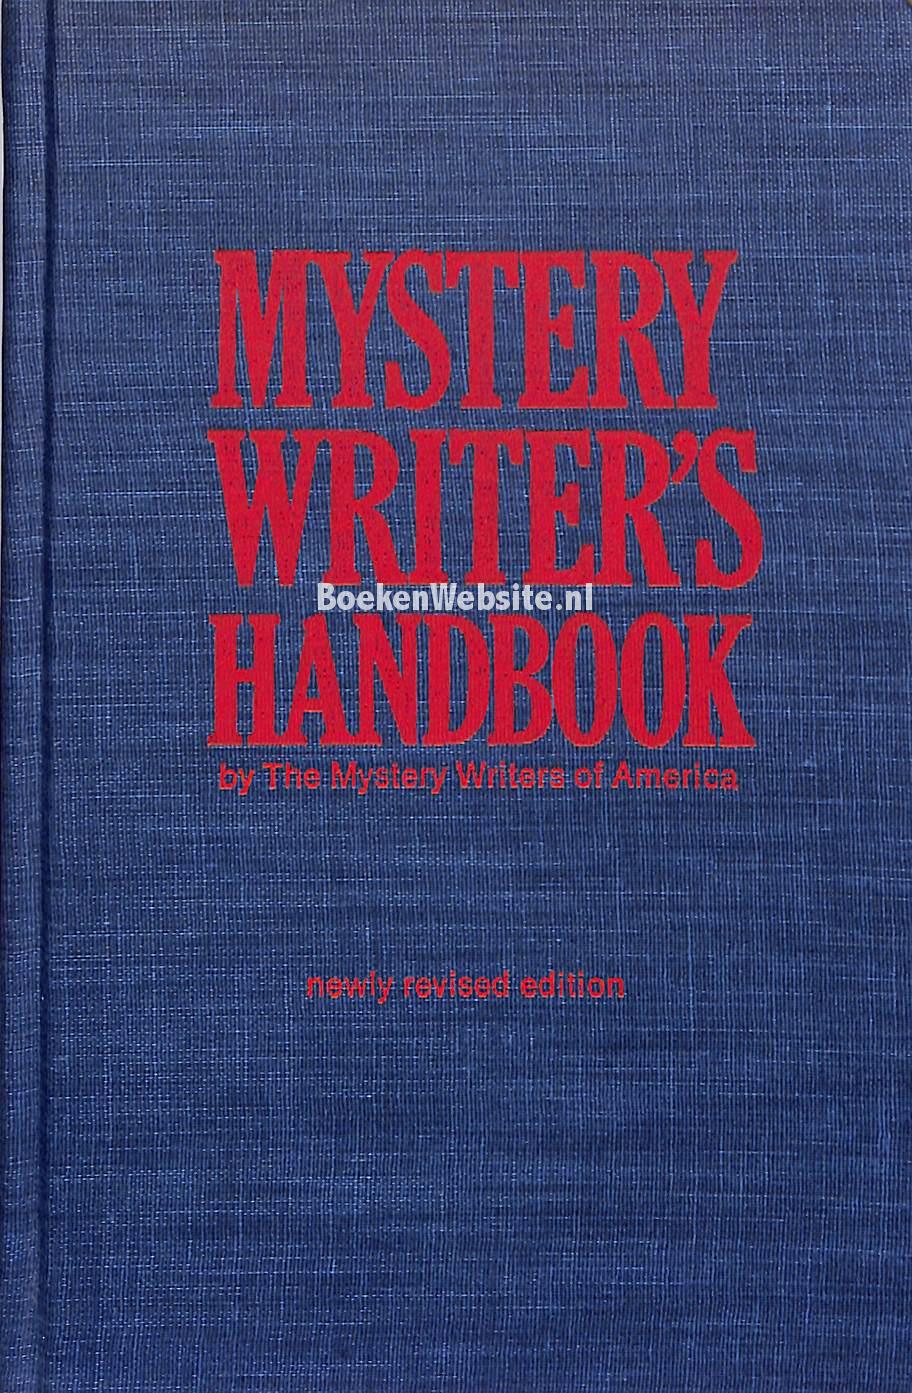 Mystery Writer #39 s Handbook Diversen Boeken Website nl